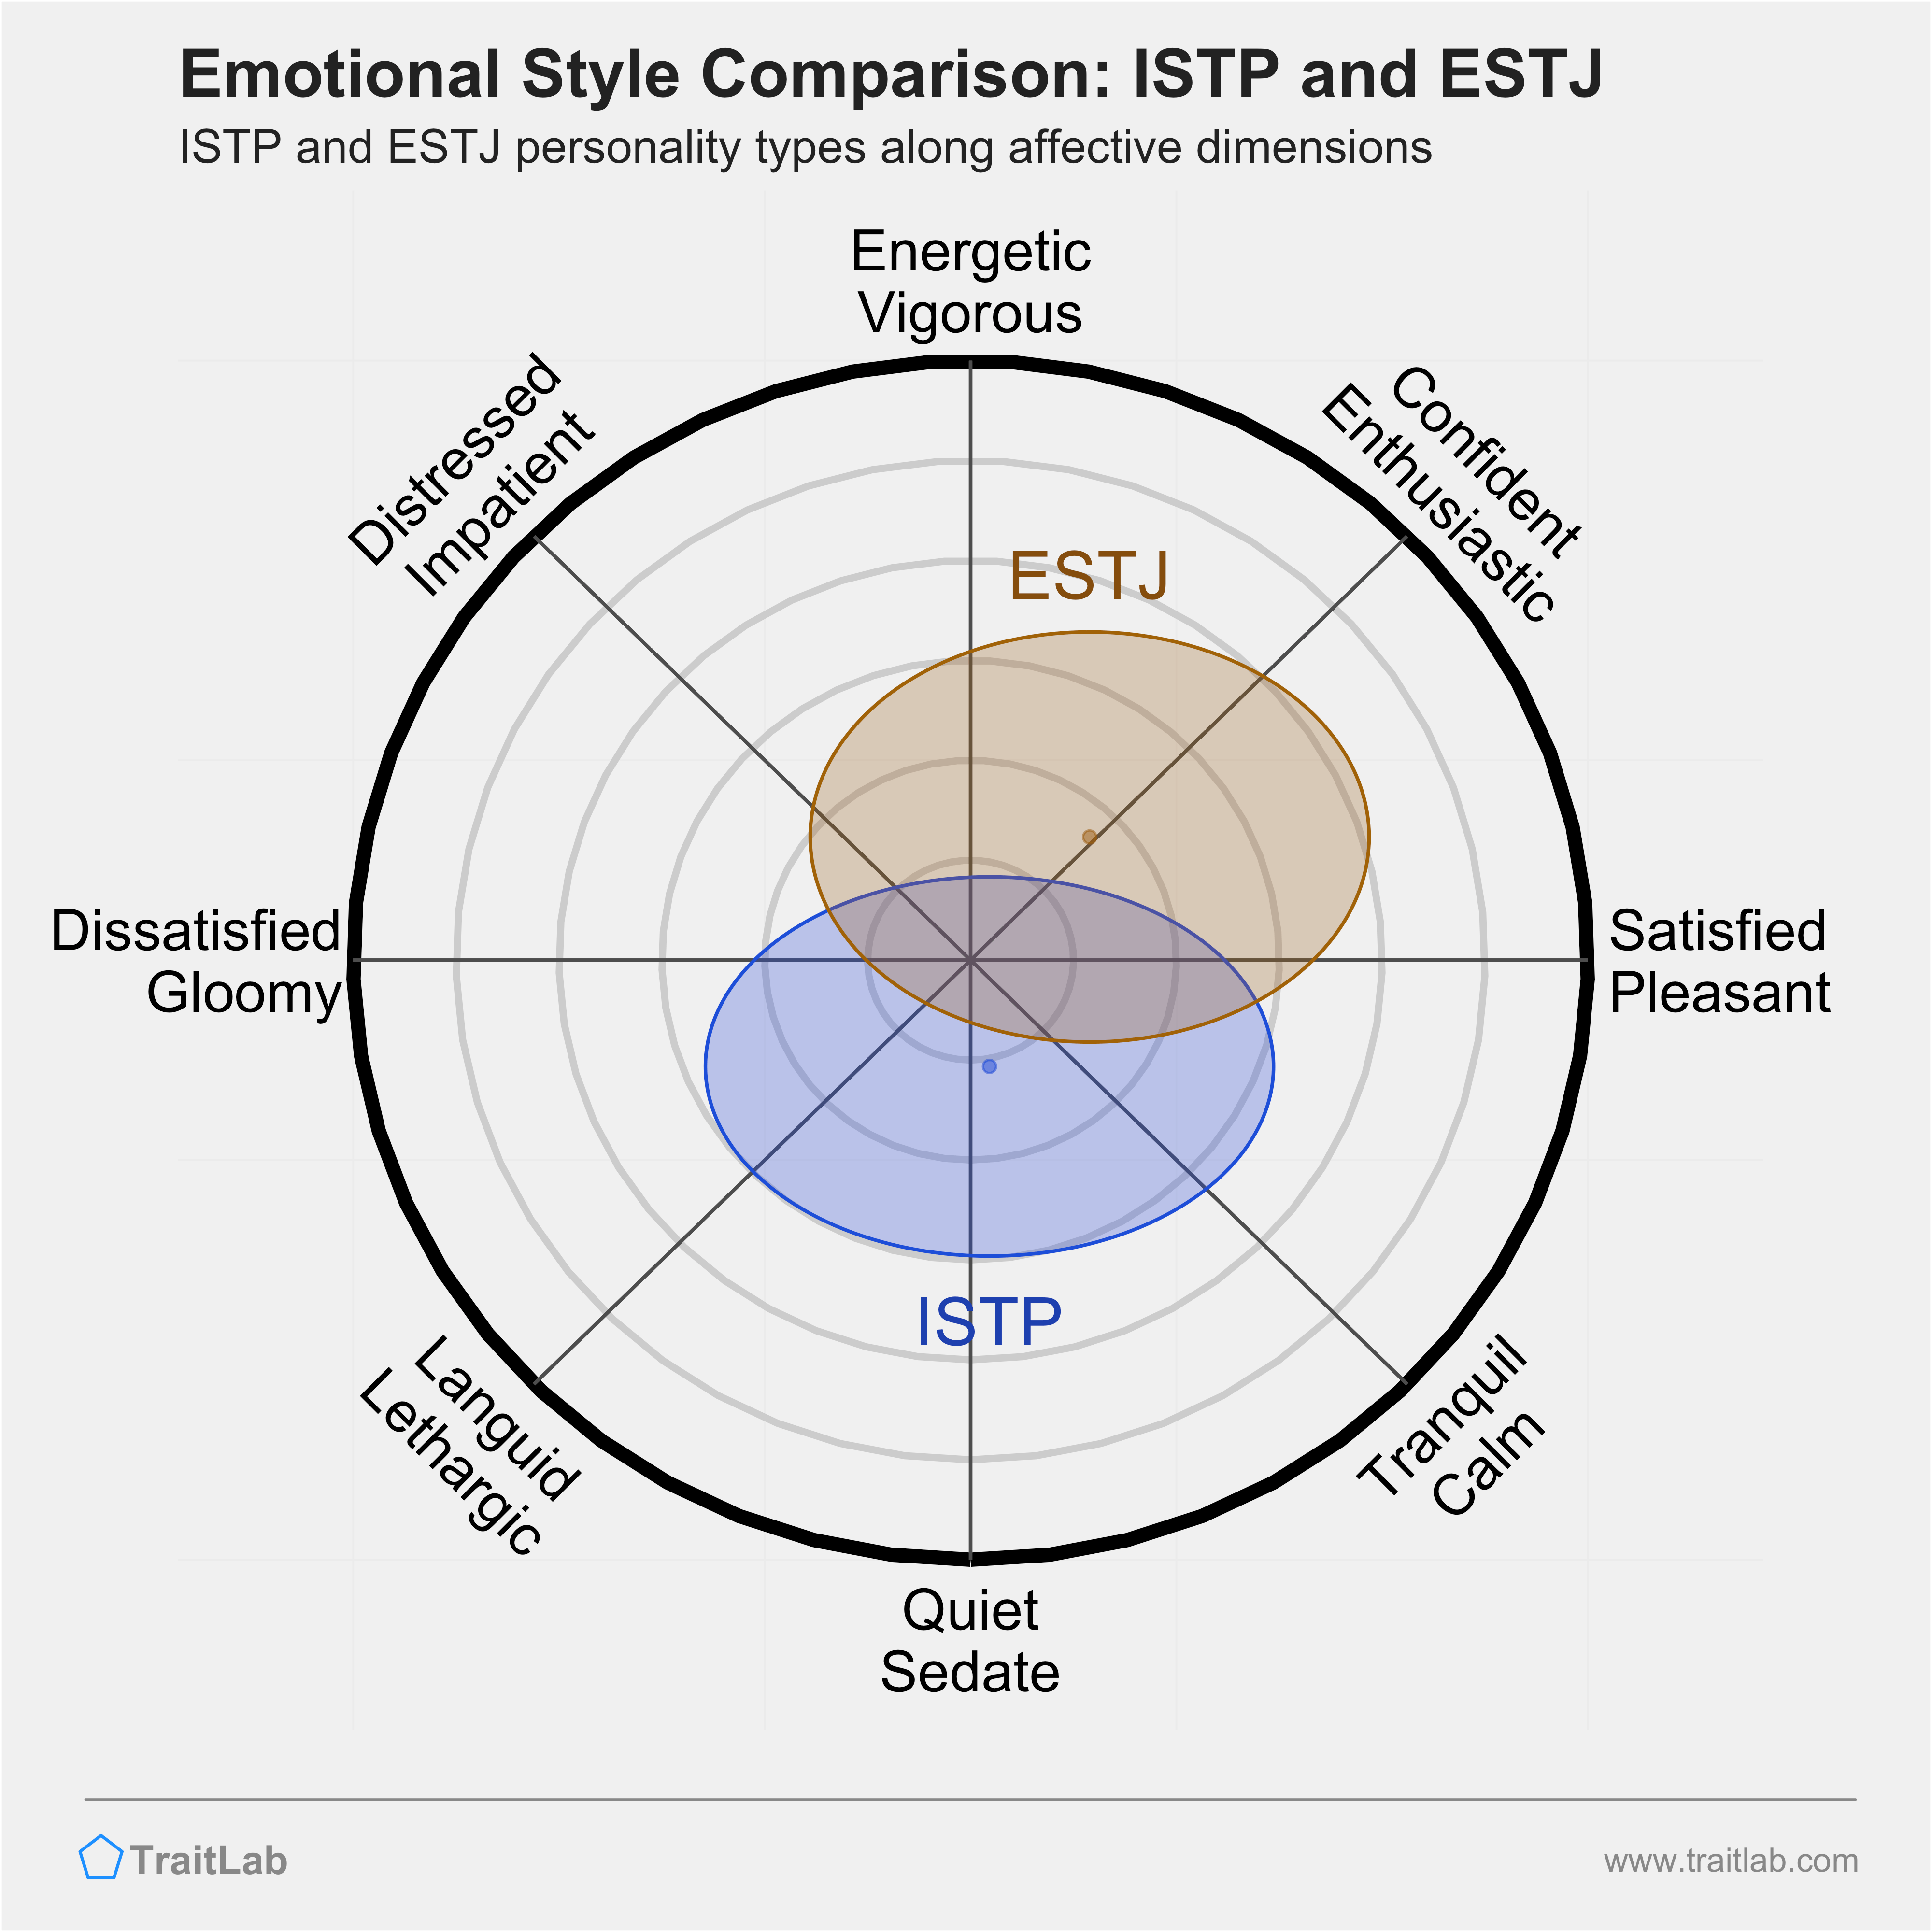 ISTP and ESTJ comparison across emotional (affective) dimensions